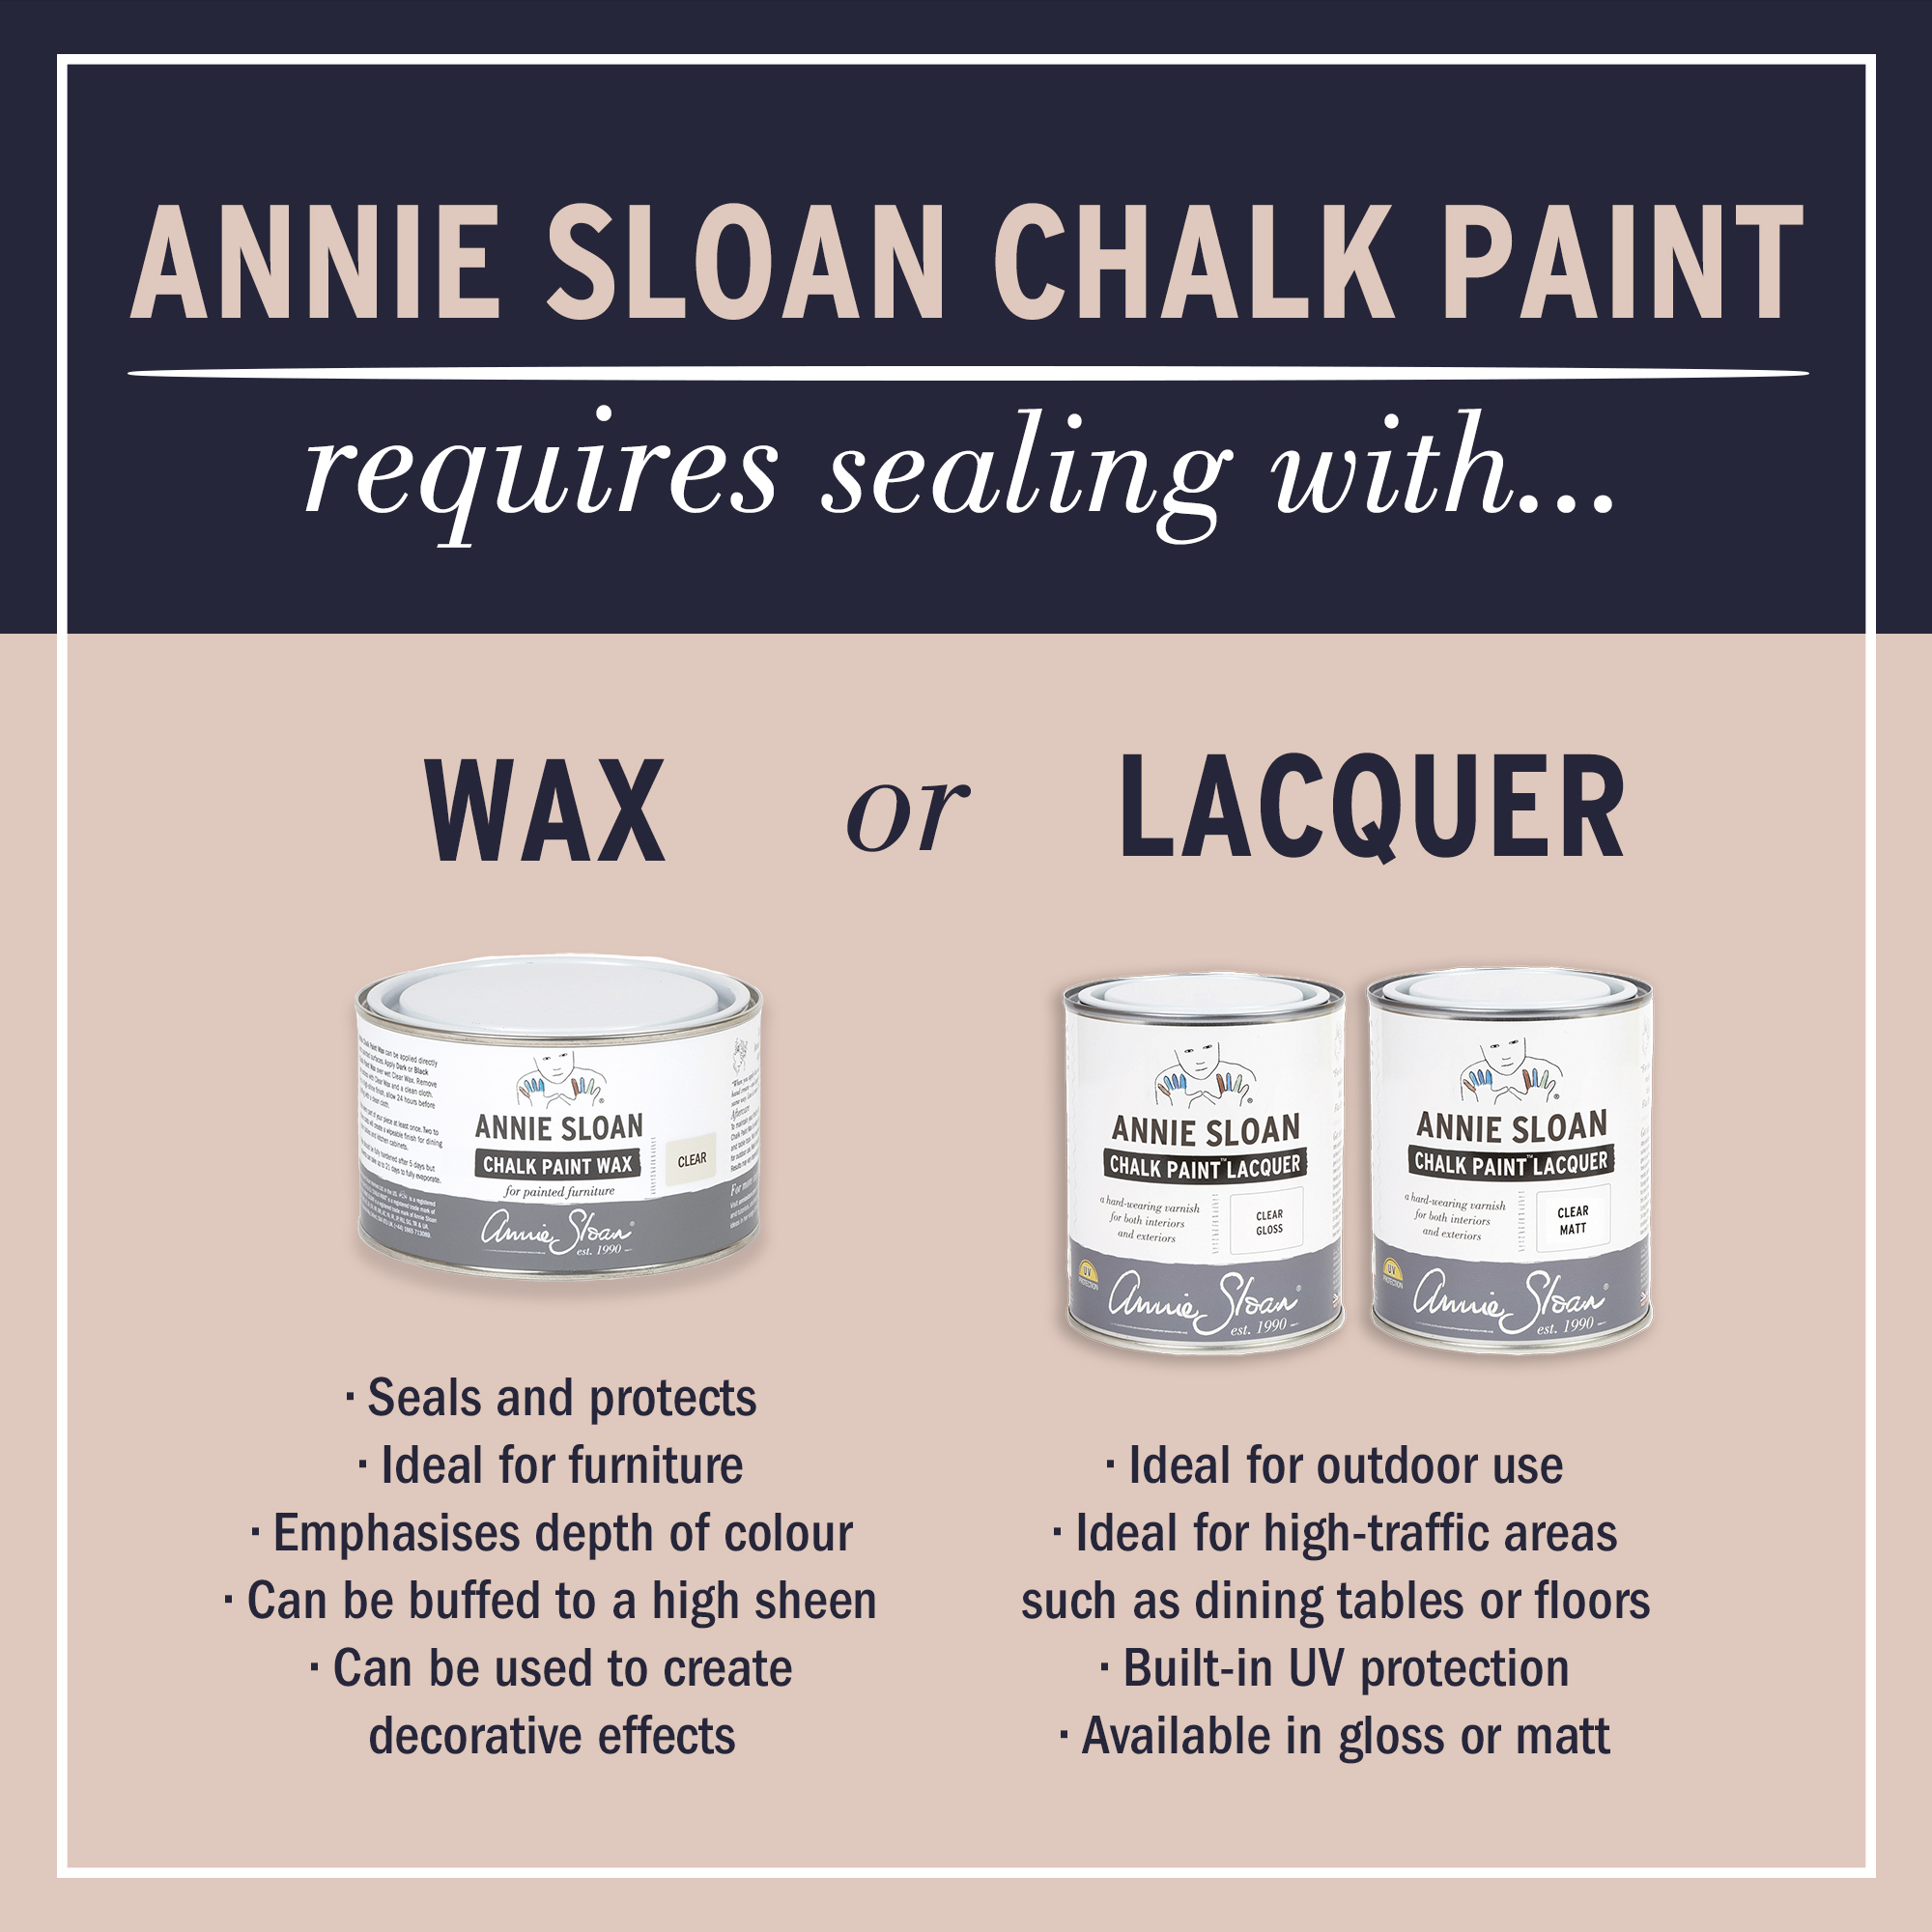 Louis Blue Annie Sloan Chalk Paint® – Thorn and Burrow